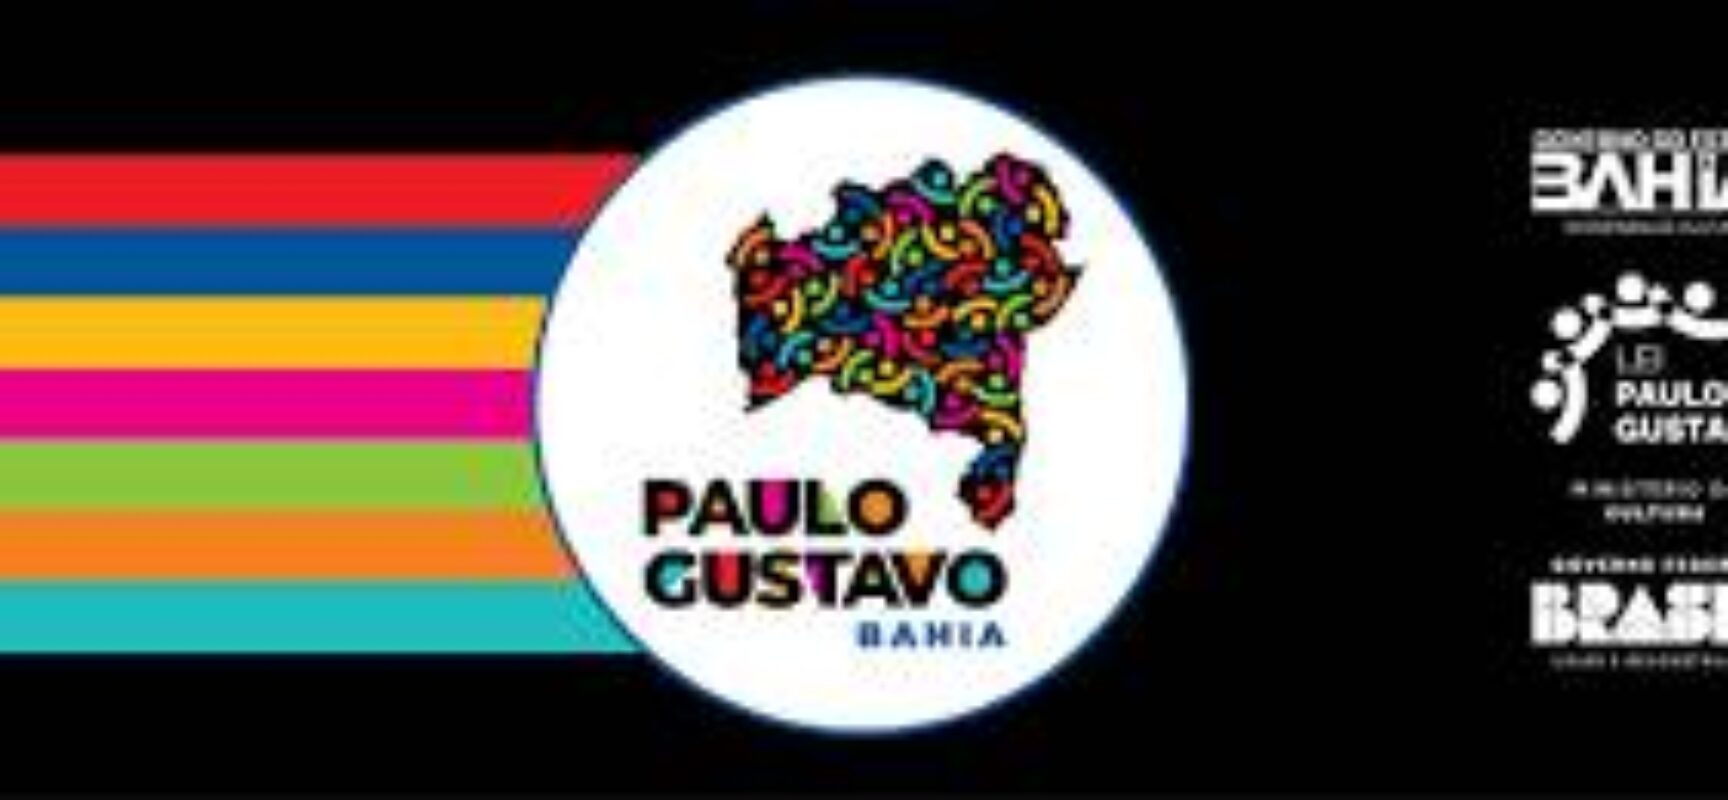 Cultura: Setor cultural recebe R$ 150 milhões via editais da Lei Paulo Gustavo Bahia